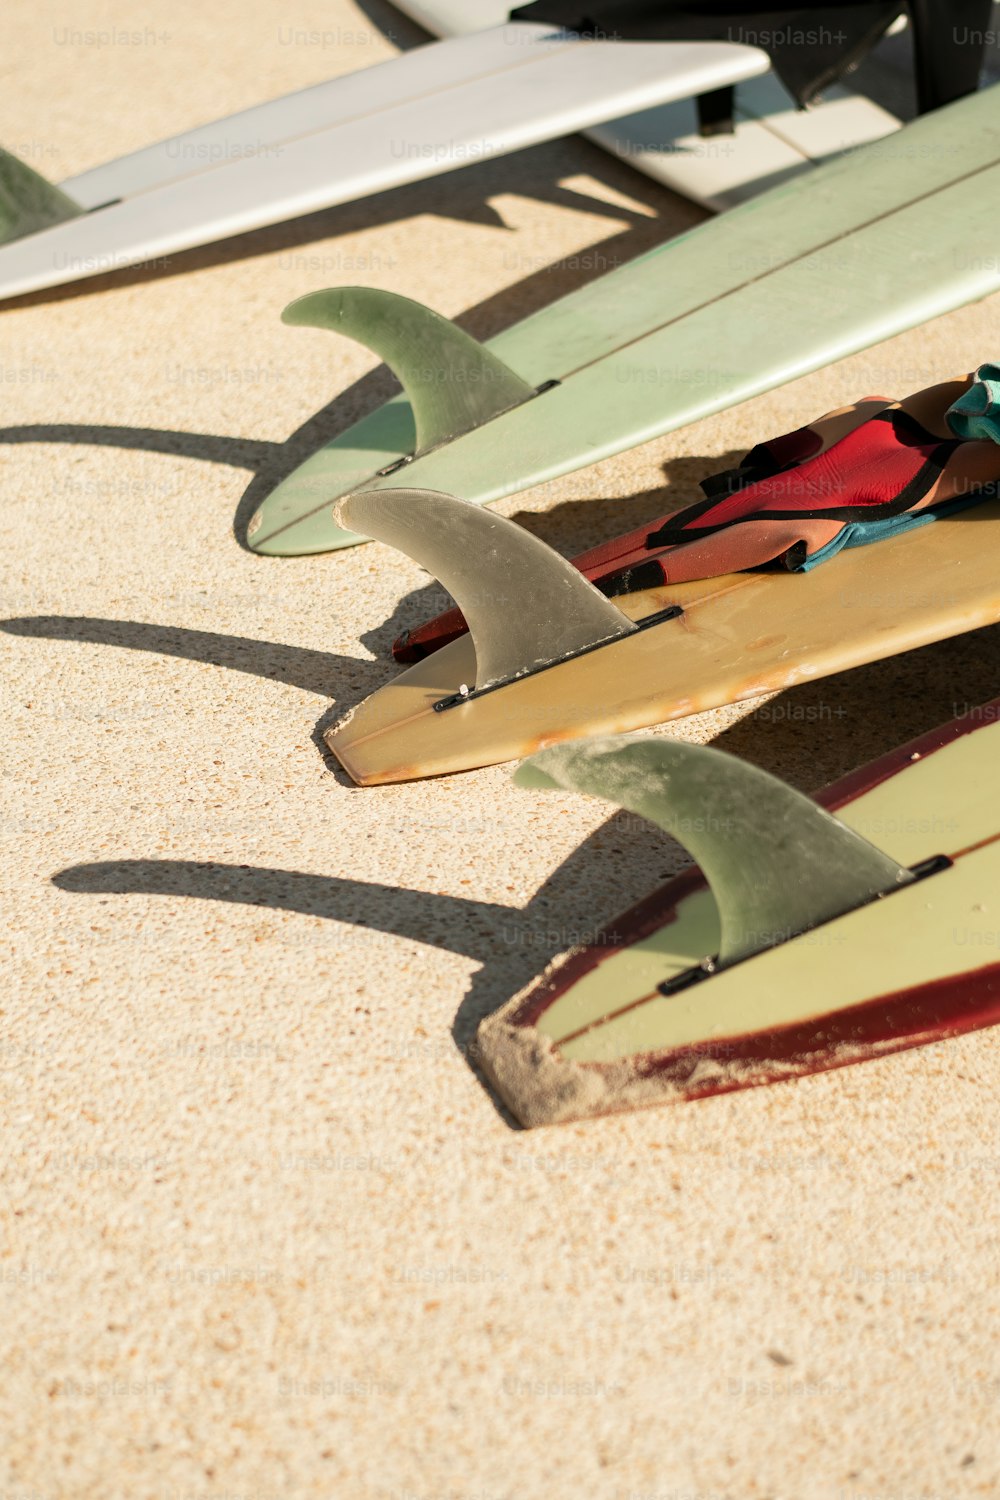 모래 사장 위에 앉아 있는 서핑보드 그룹